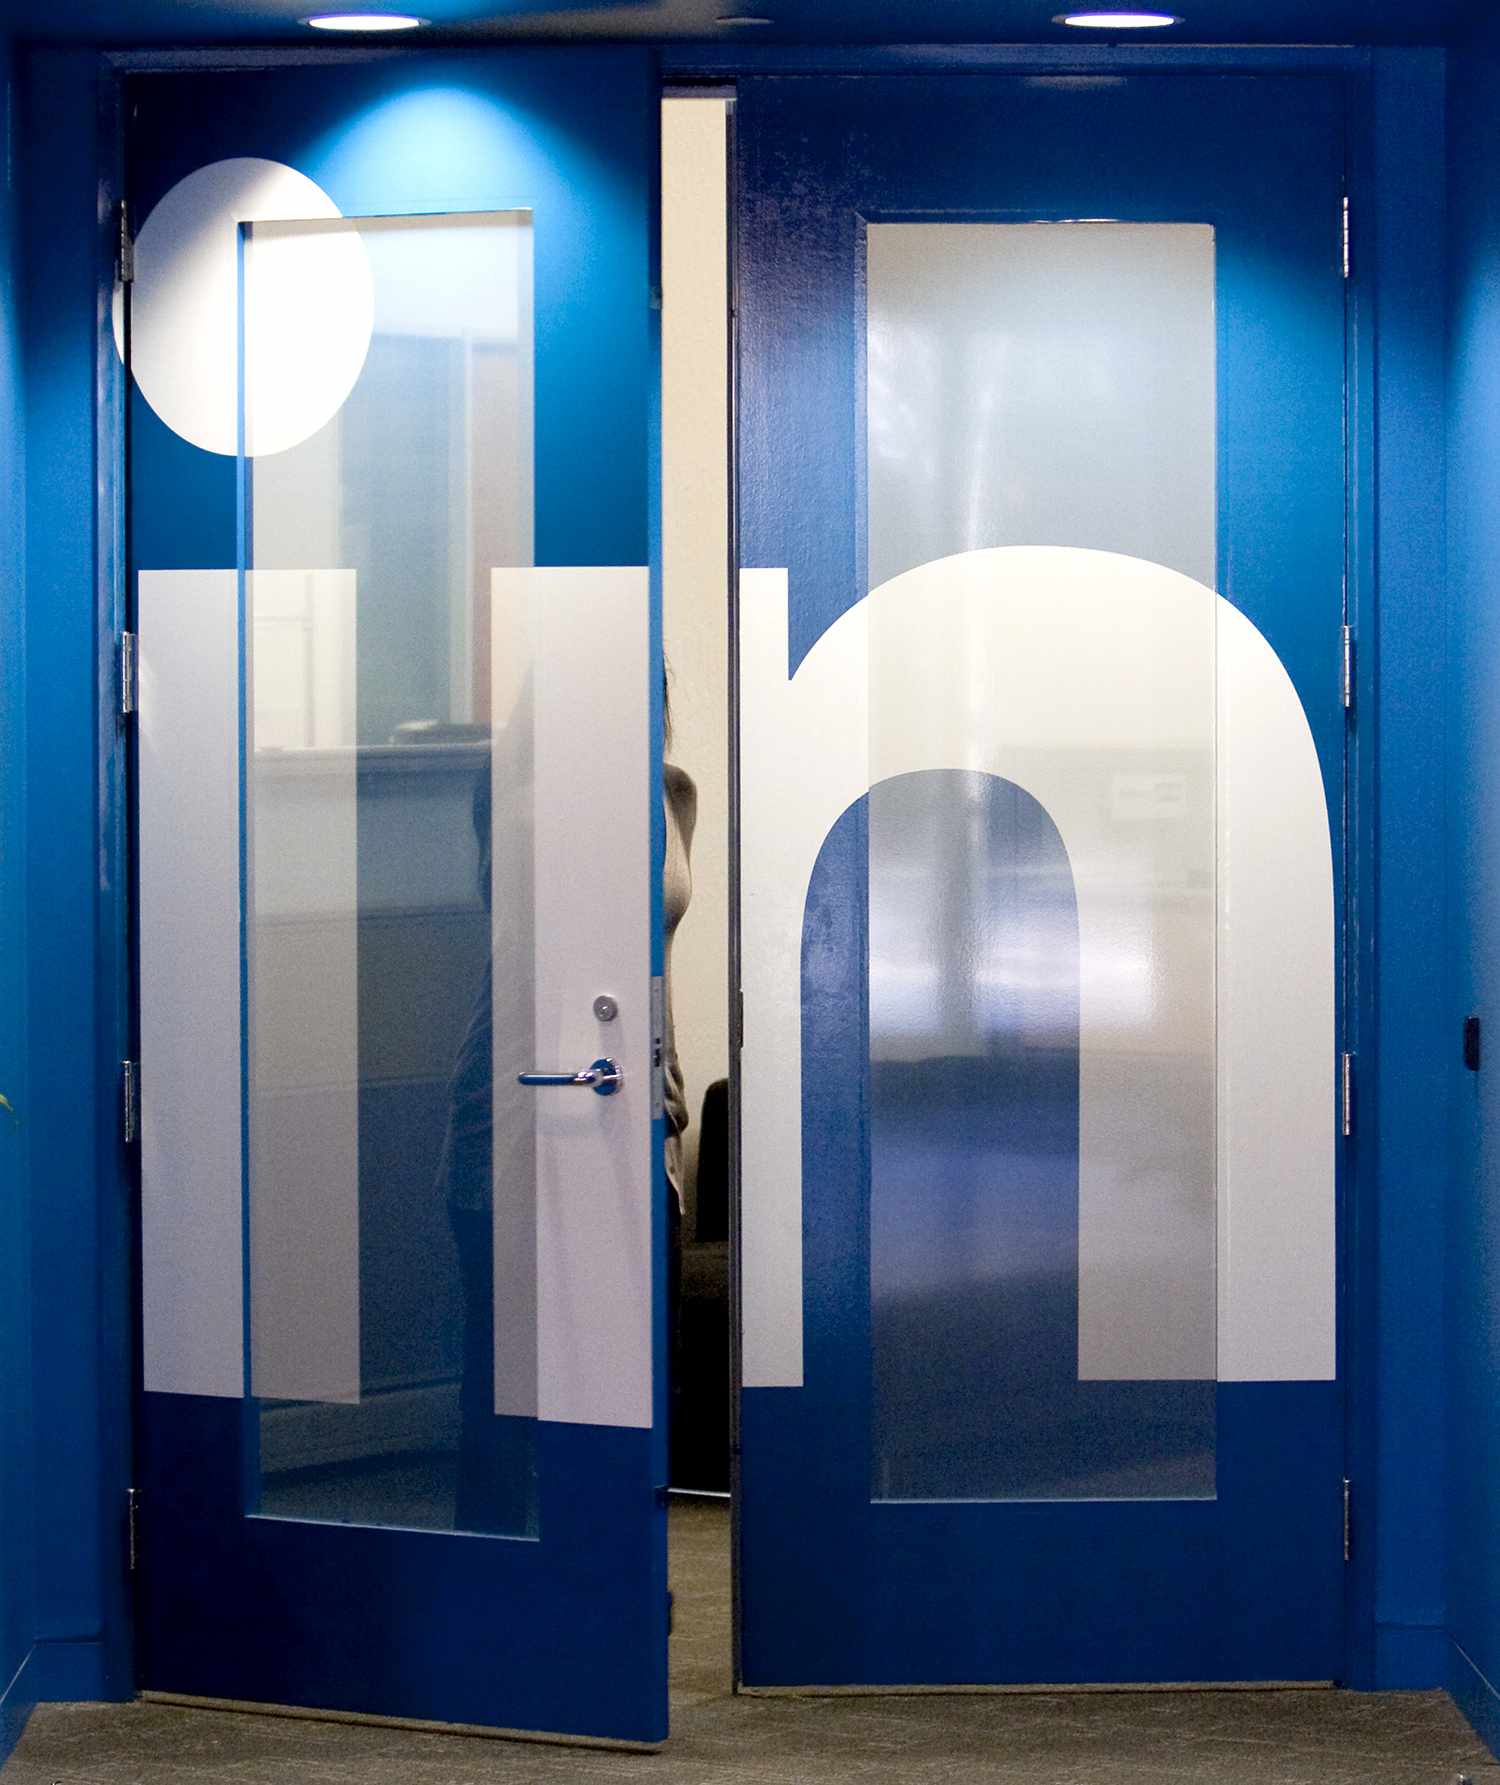 LinkedIn doors